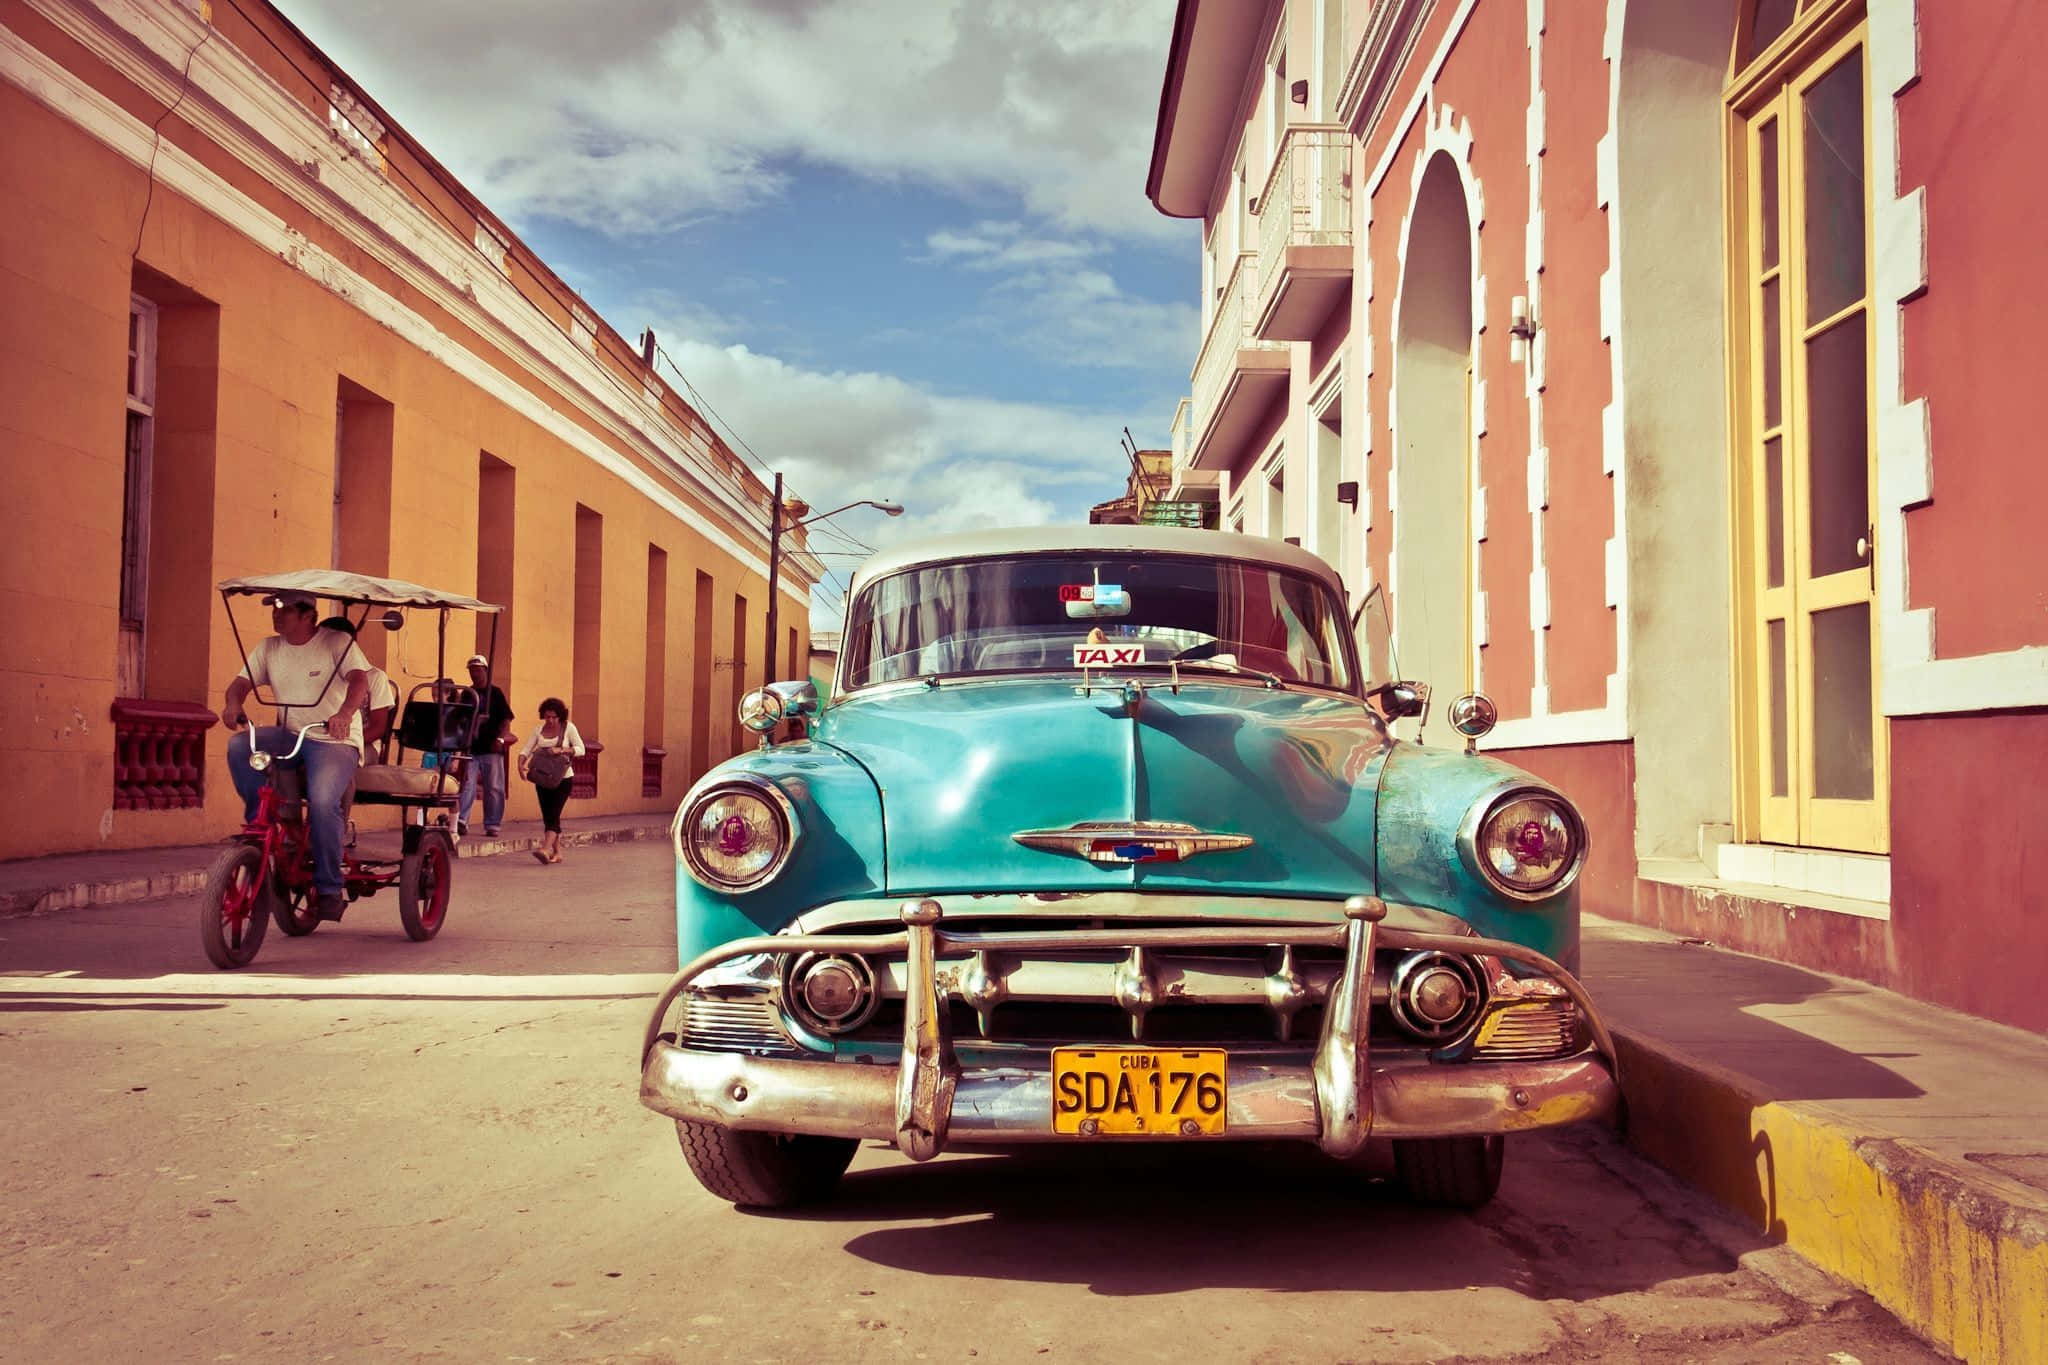 Lahabana, Cuba: Impresionante Arquitectura Y Cultura.